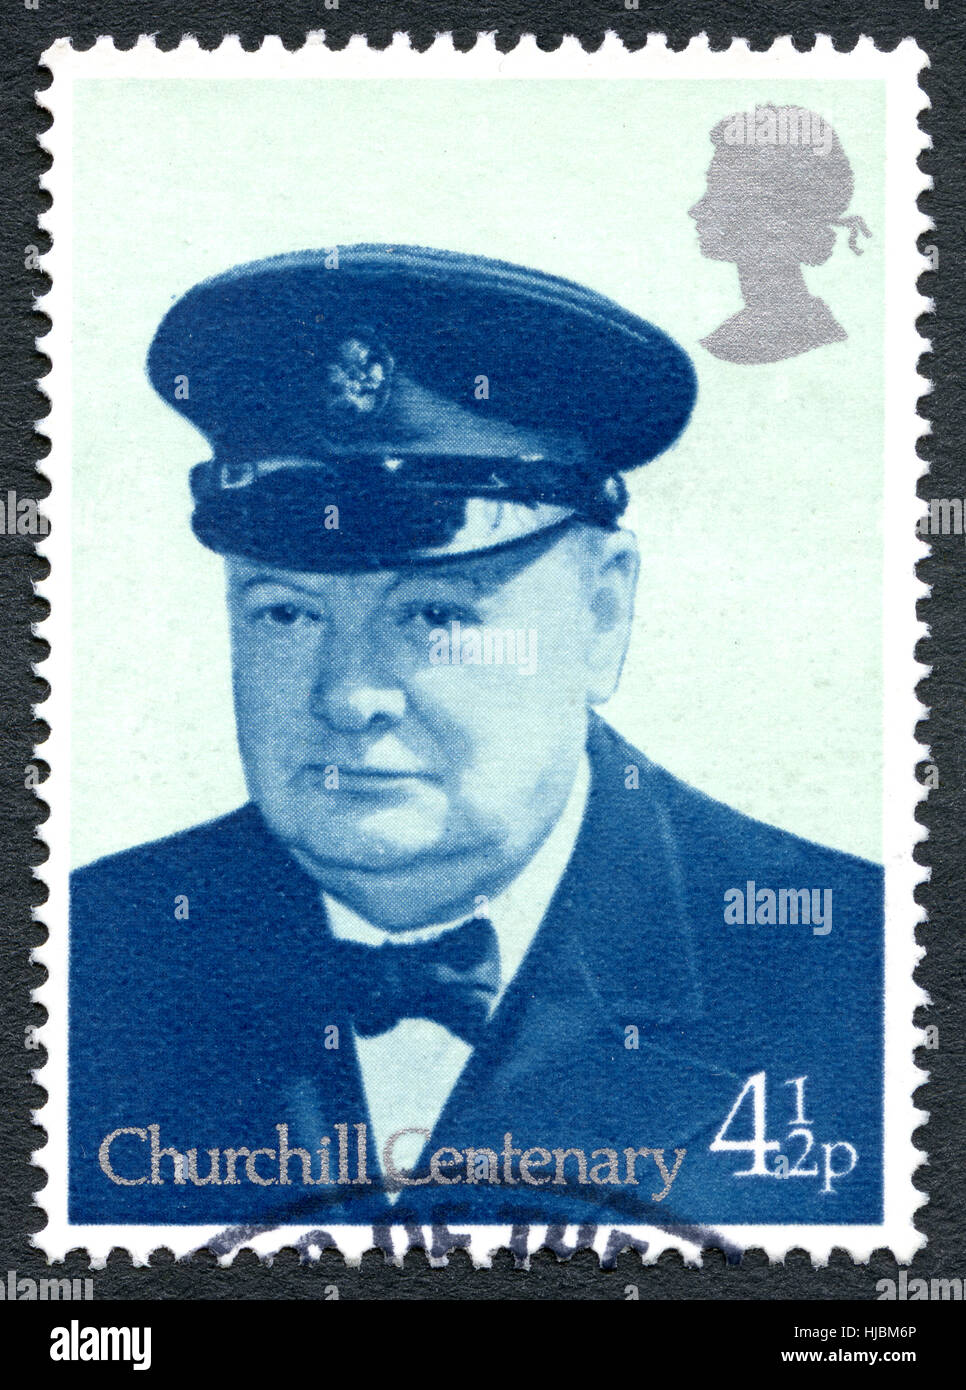 Großbritannien - CIRCA 1974: Eine gebrauchte Briefmarke aus dem Vereinigten Königreich, zeigt ein Porträt der ehemalige britische Premierminister Sir Winston Churchill, ca. 1974. Stockfoto